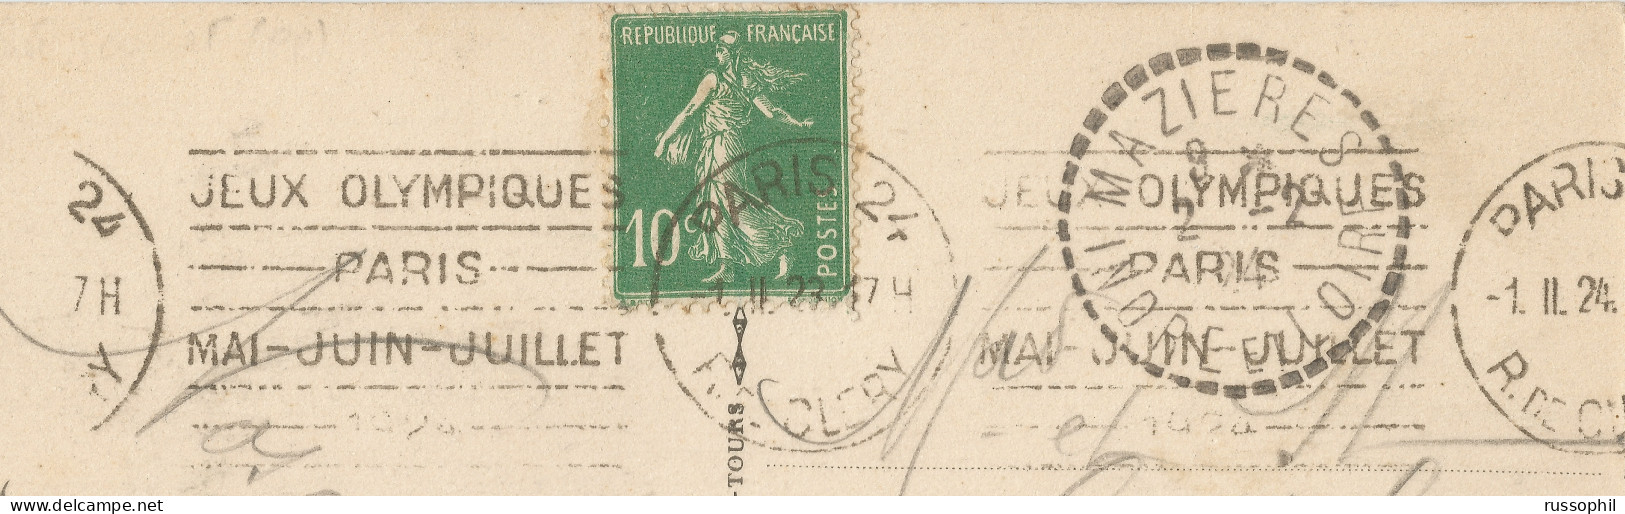 FRANCE - KRAG DEPARTURE PMK "PARIS 24 JEUX OLYMPIQUES" ON FRANKED PC (VIEW OF PARIS) TO MAZIERES (37) - 1924 - Sommer 1924: Paris